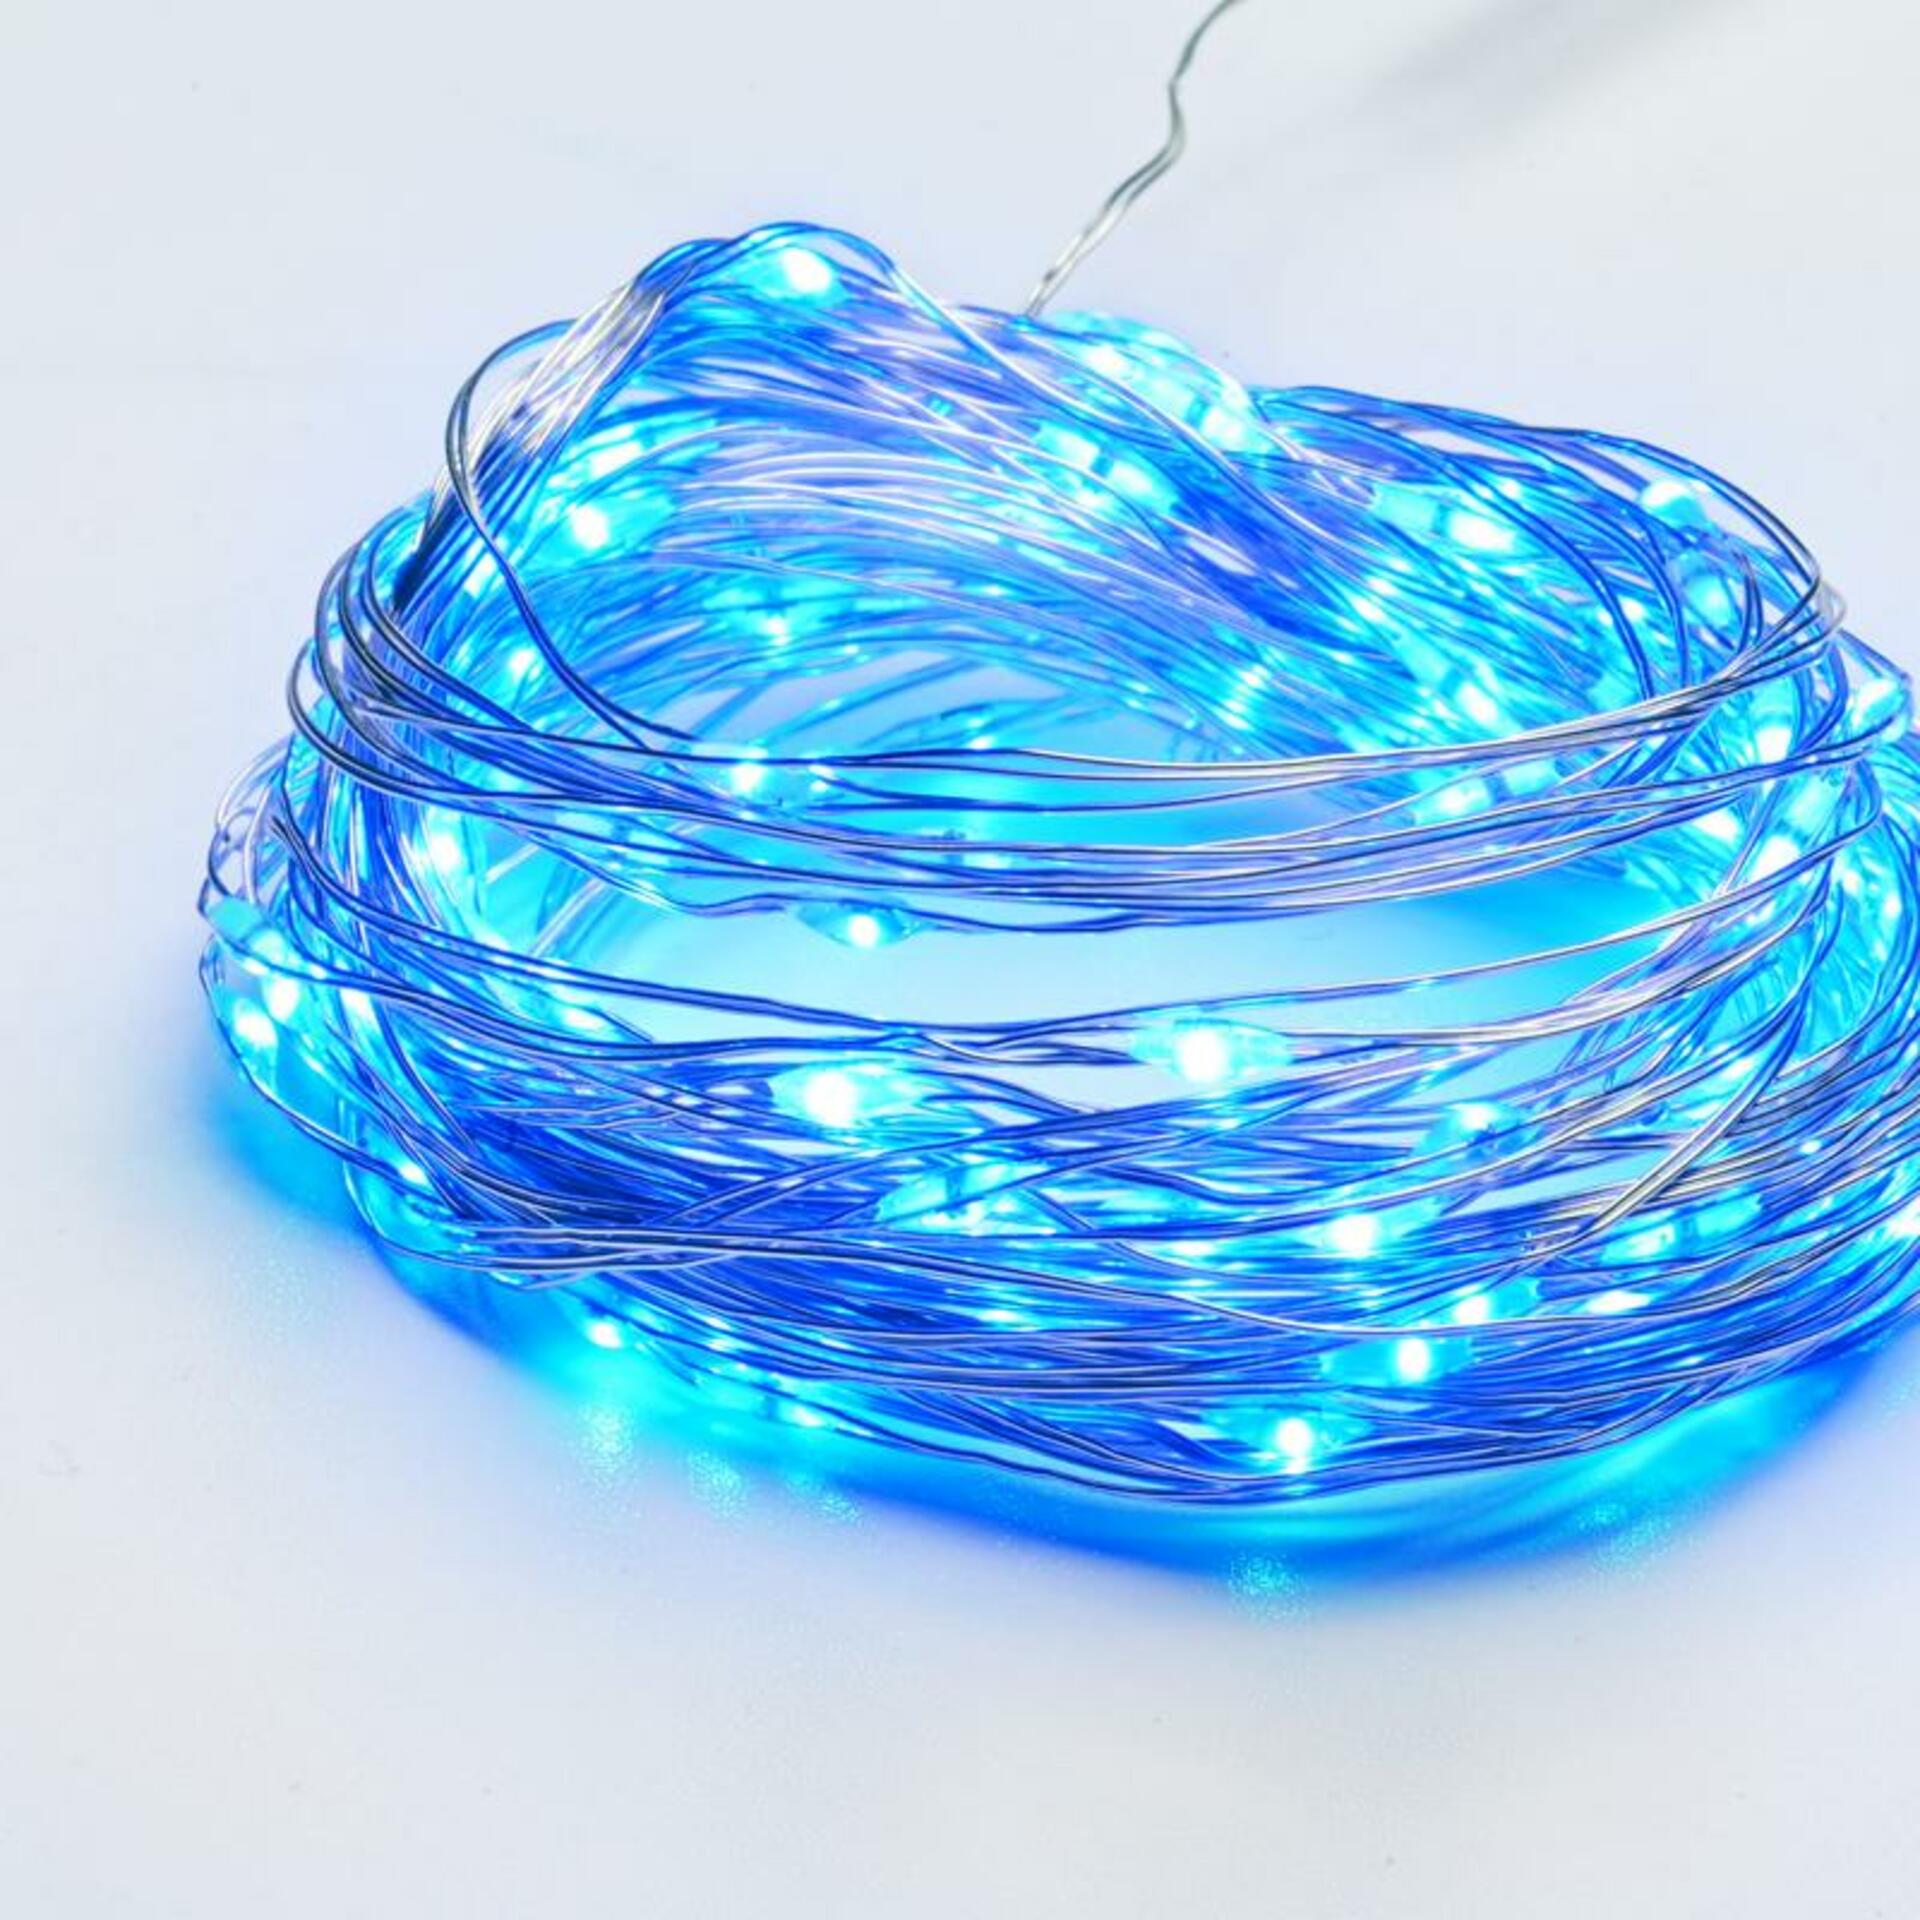 ACA Lighting 100 LED dekorační řetěz, modrá, stříbrný měďený kabel, 220-240V + 8 funkcí, IP44, 10m+3m, 600mA X01100612